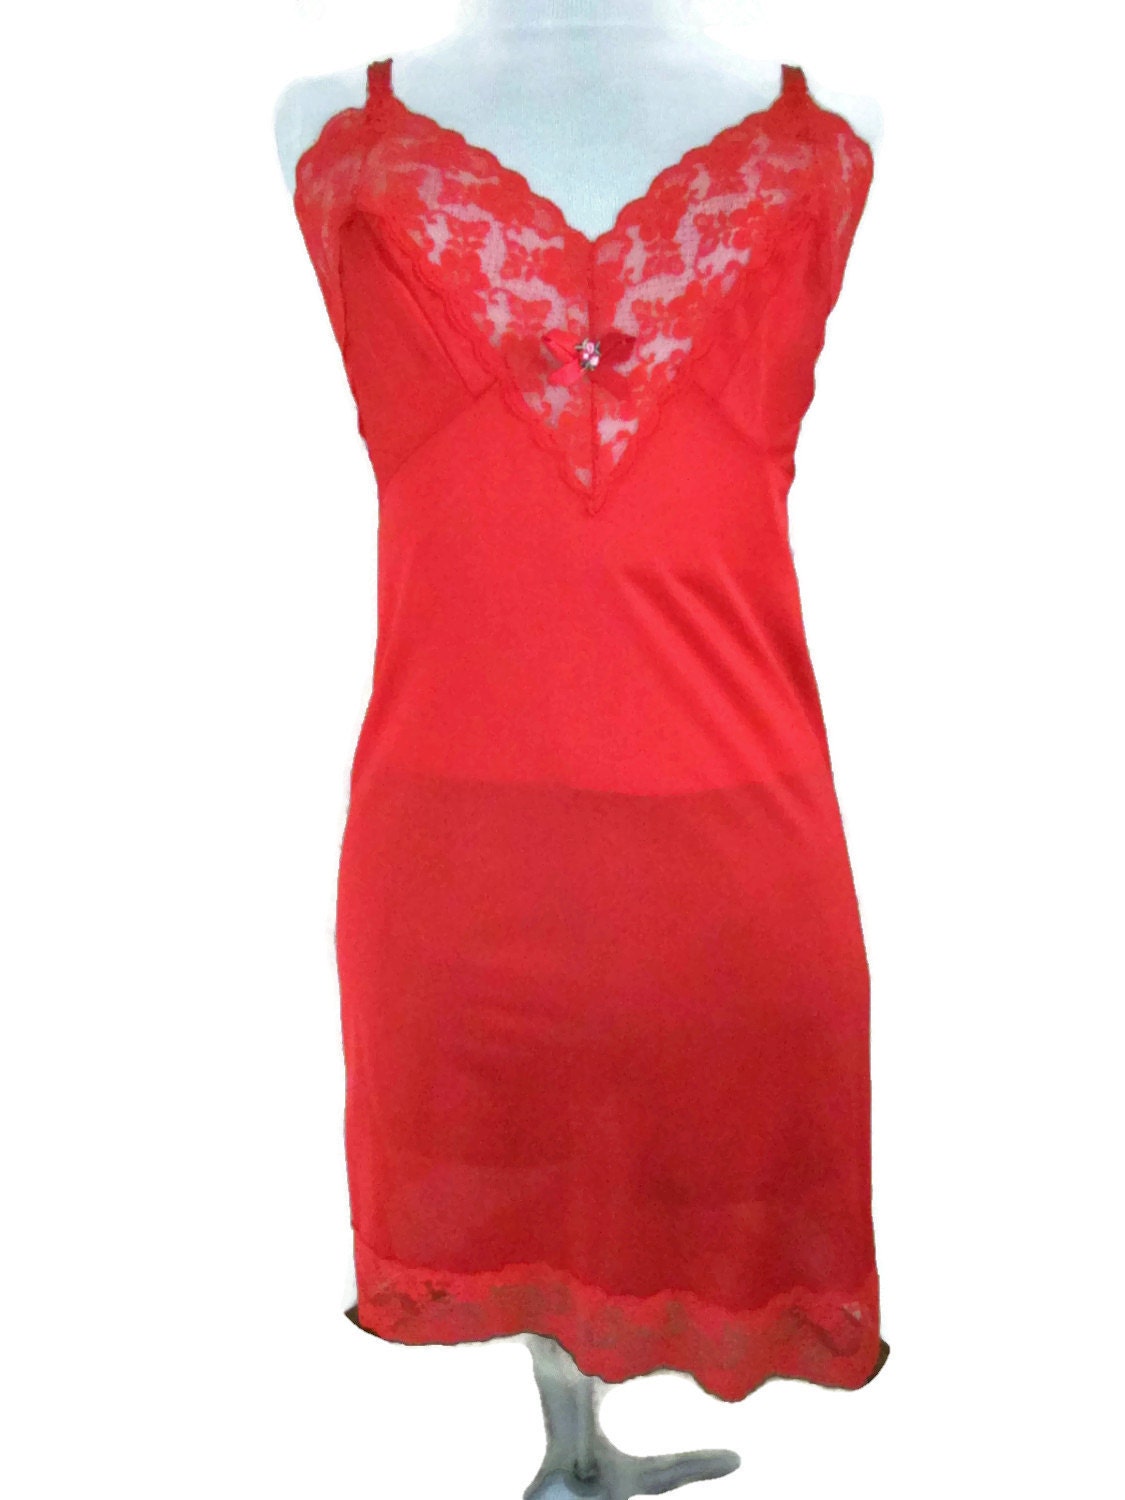 Vintage Slip Red Lace Slip Full Length Dress by WhyWeLoveThePast